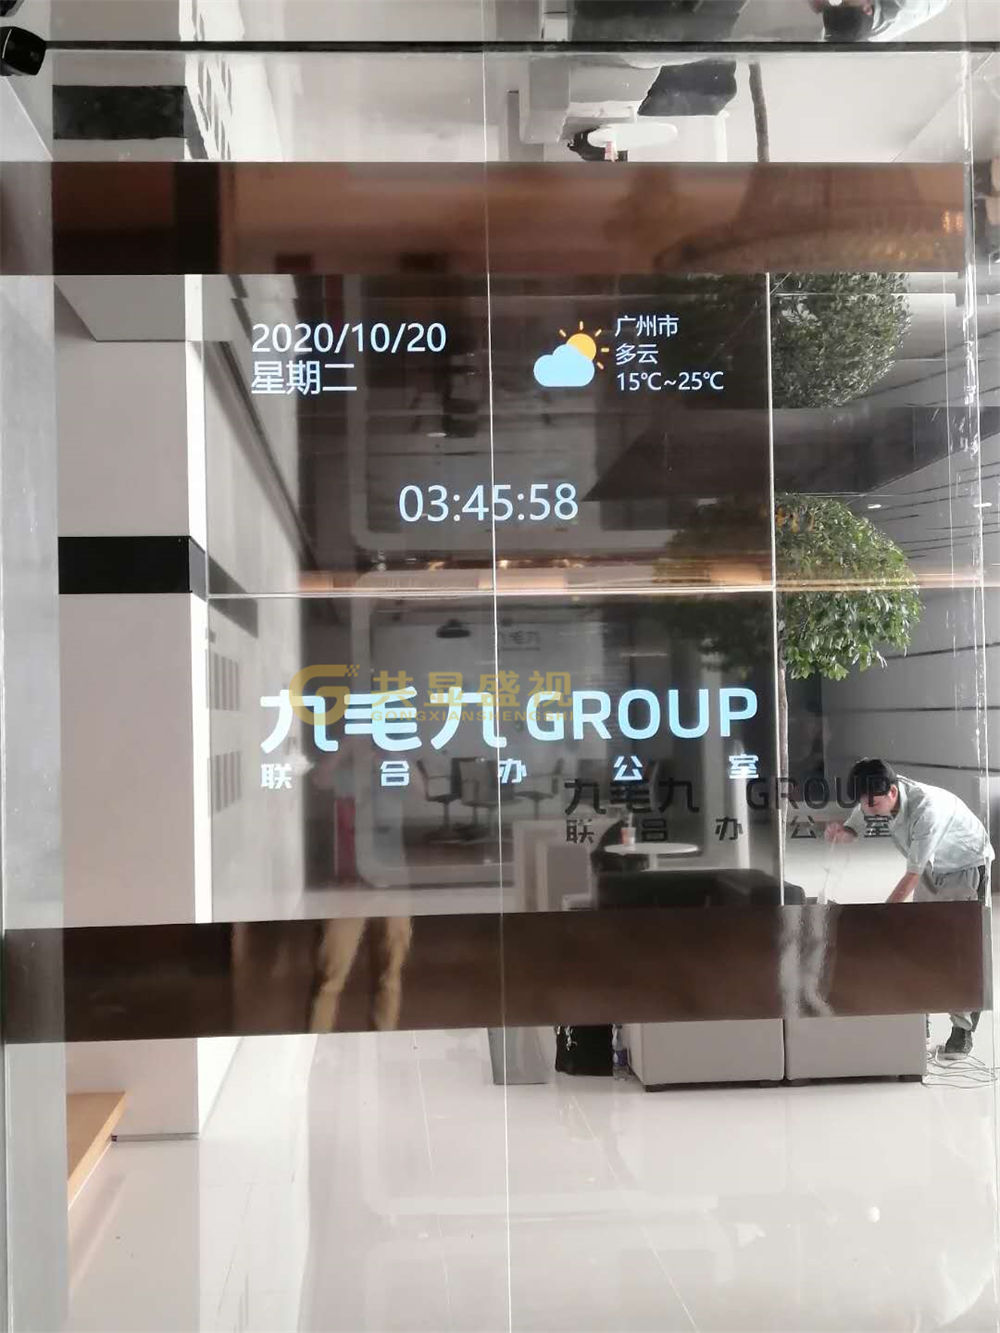 九毛九广州总部OLED透明屏应用案例 (3).jpg